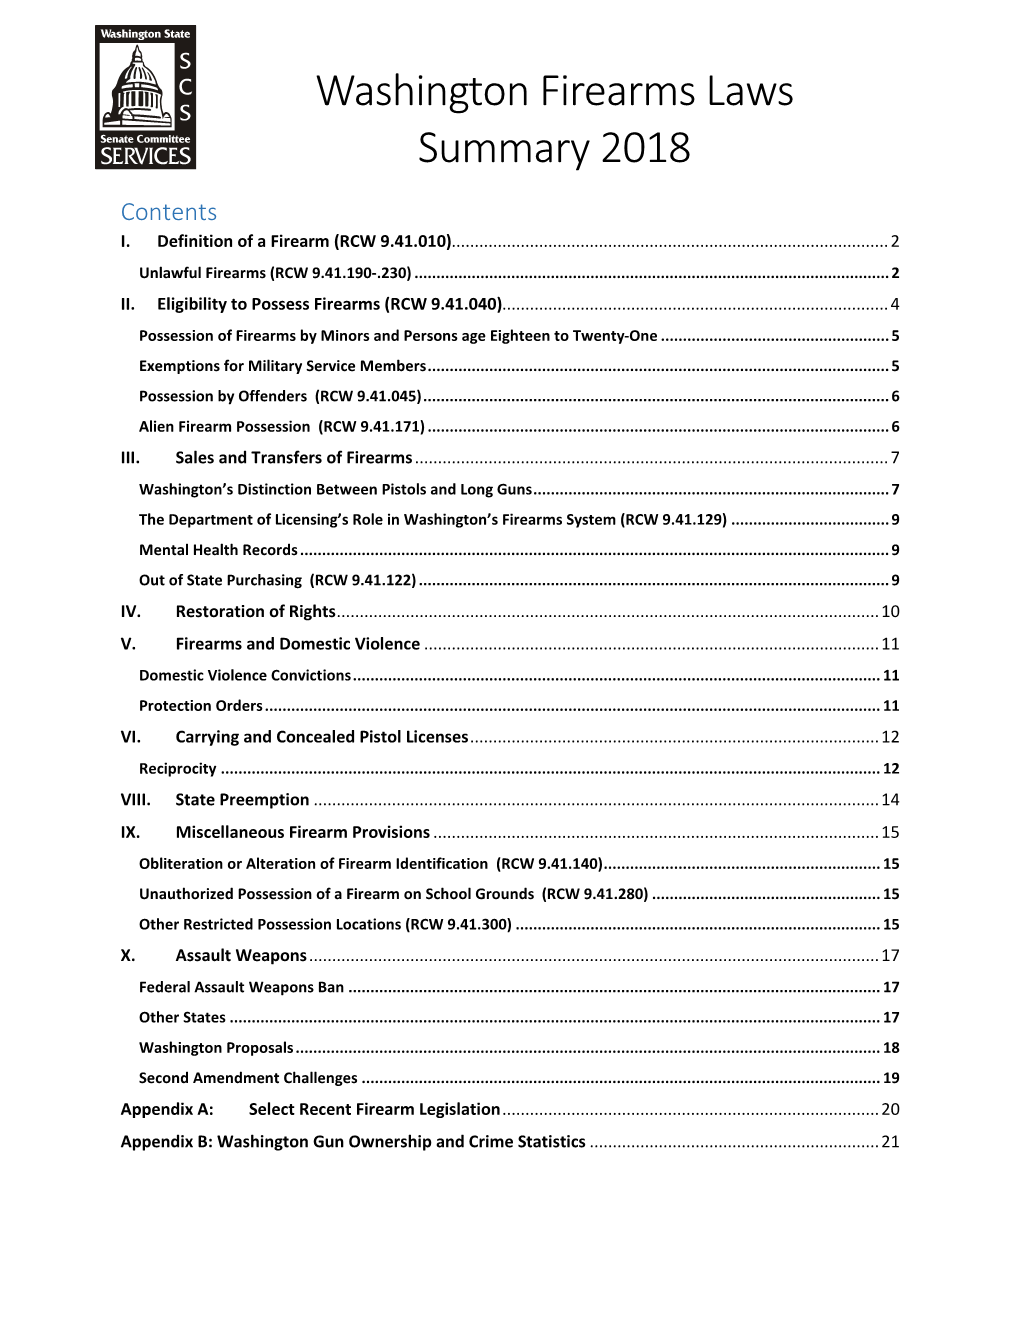 Washington Firearms Laws Summary 2018 Contents I